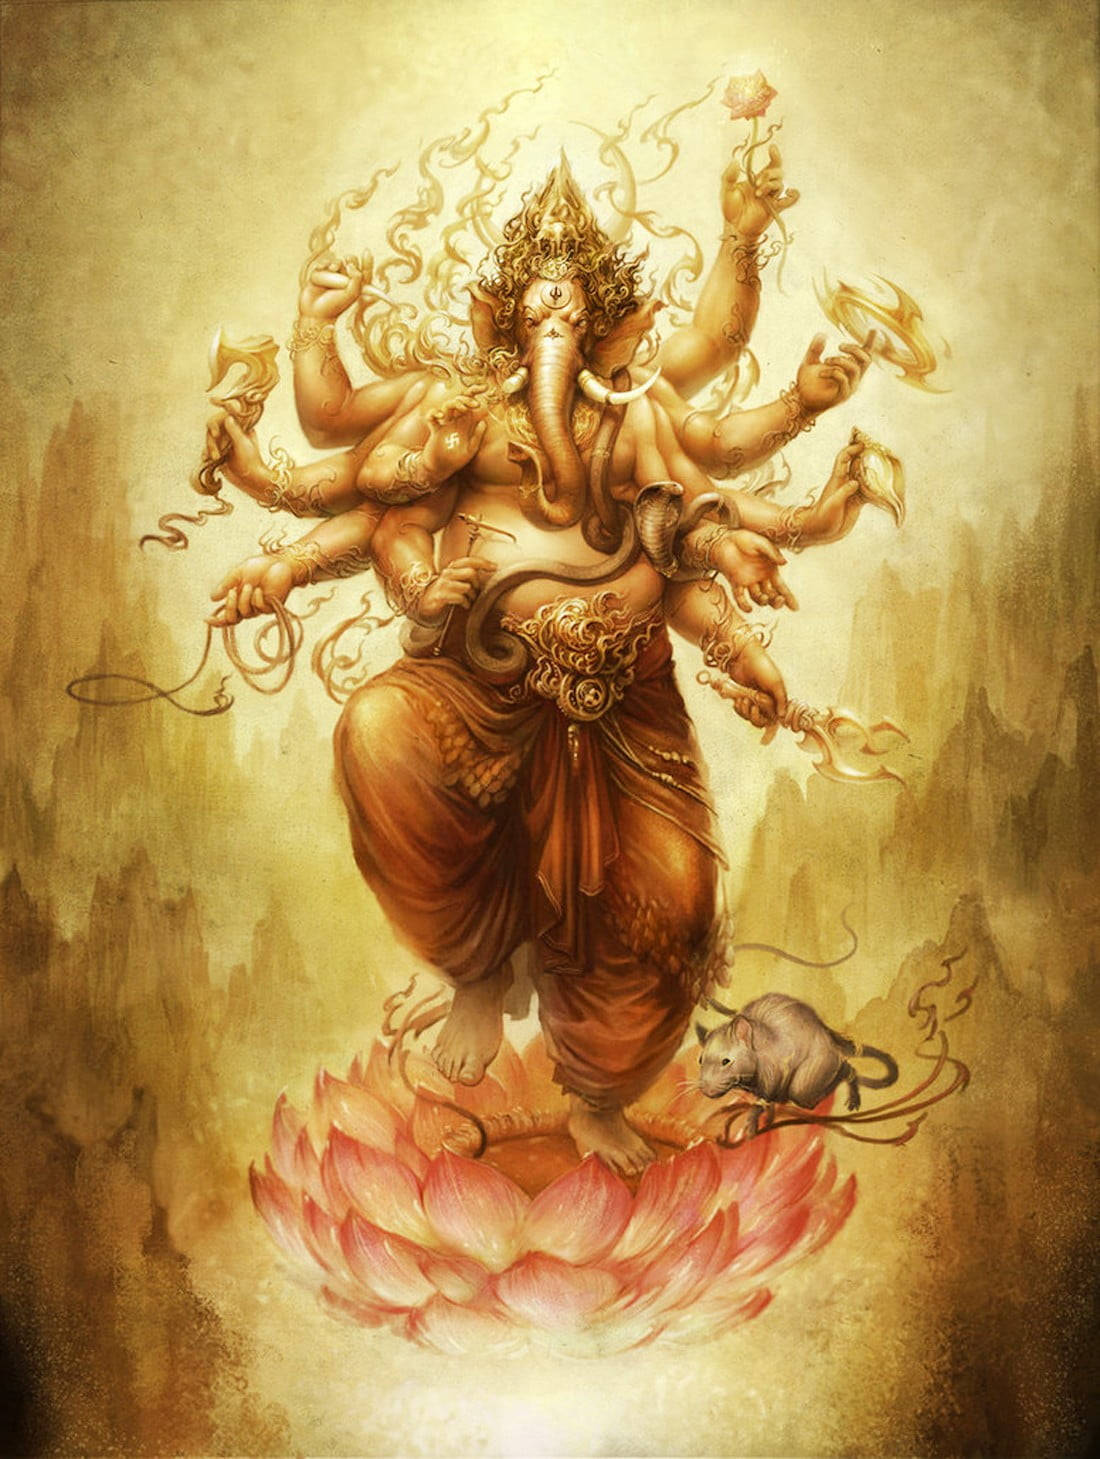 Free Ganesh Ji Hd Wallpaper Downloads, [100+] Ganesh Ji Hd Wallpapers for  FREE 